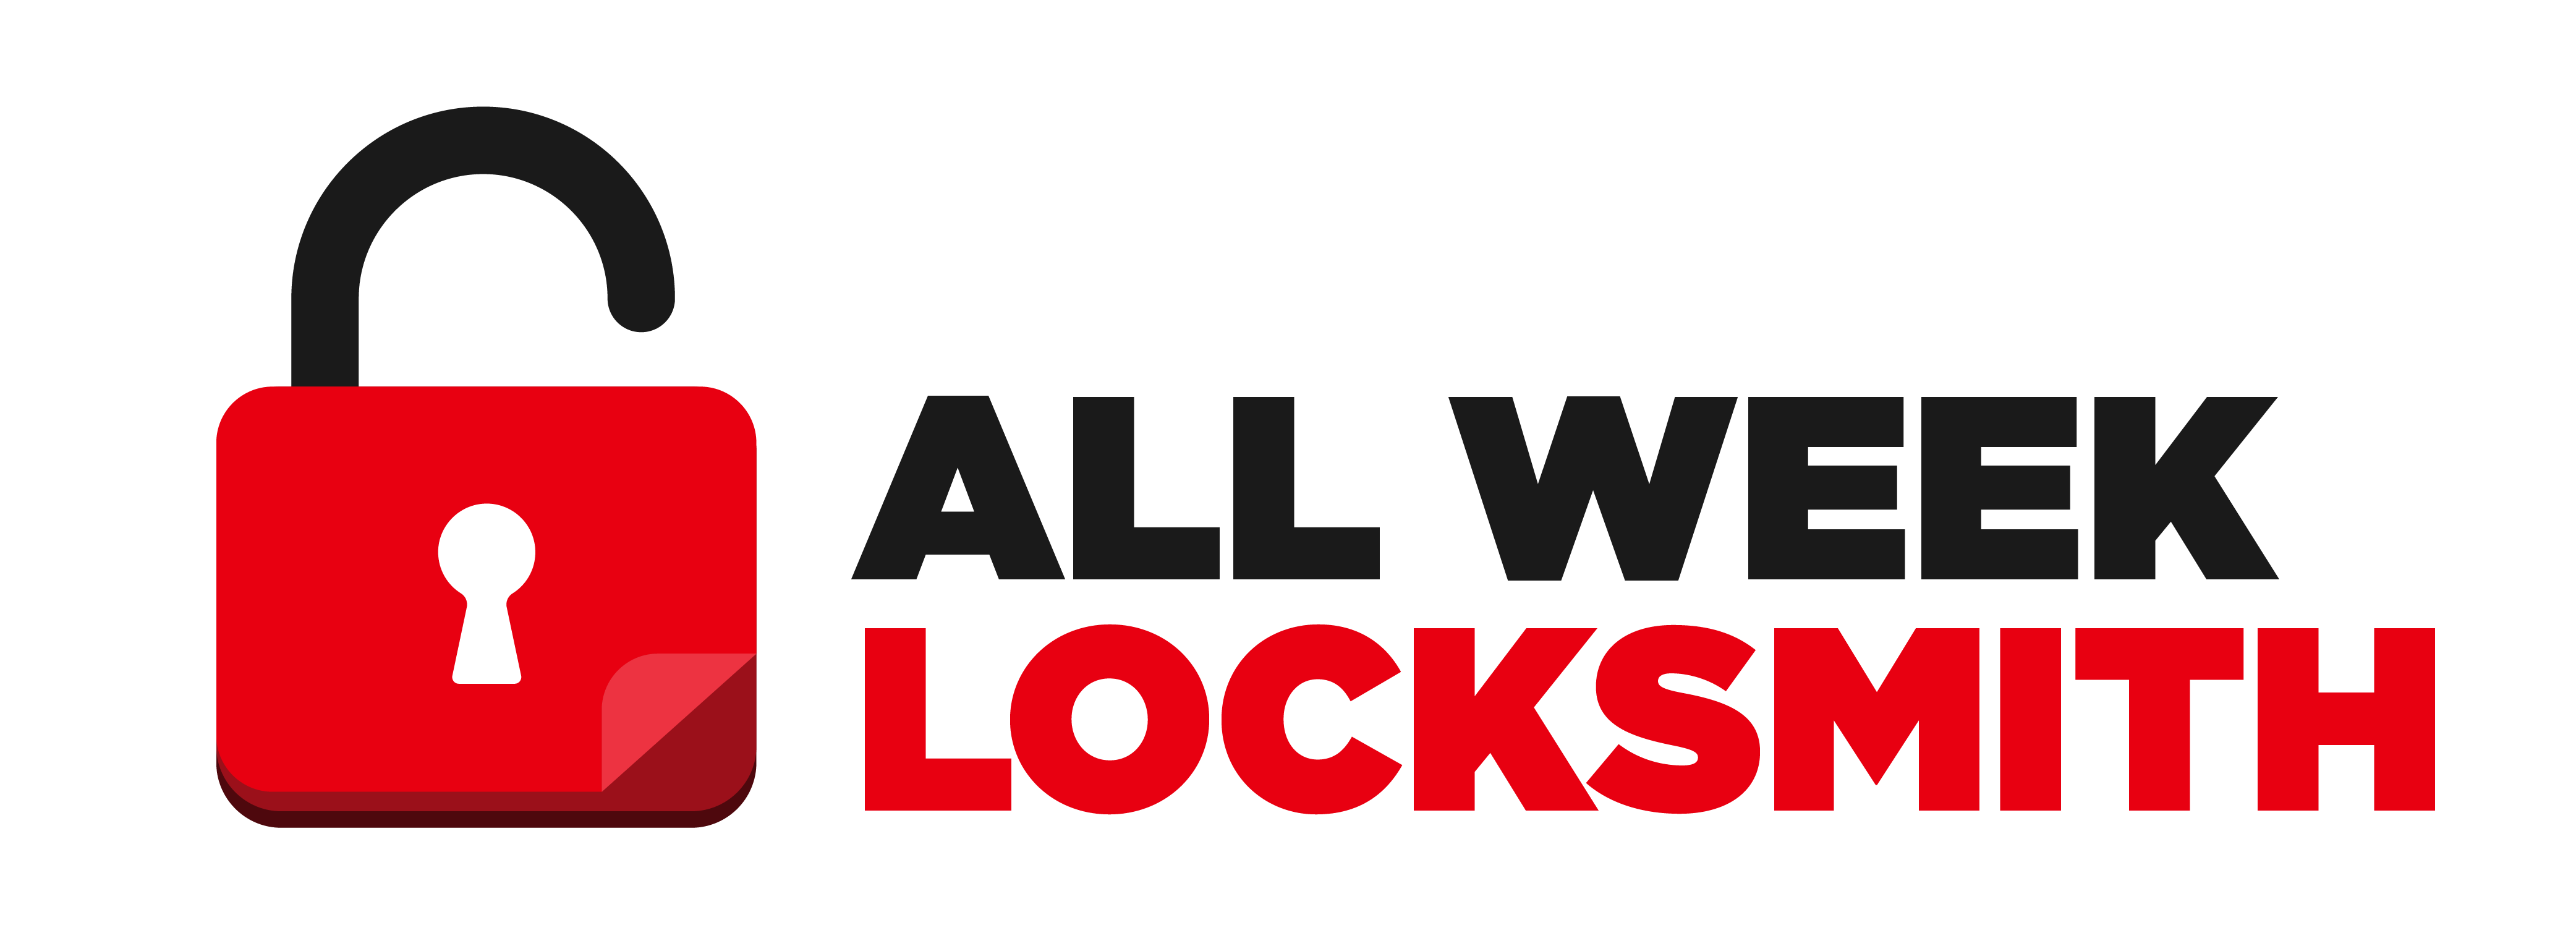 All week locksmith Logo